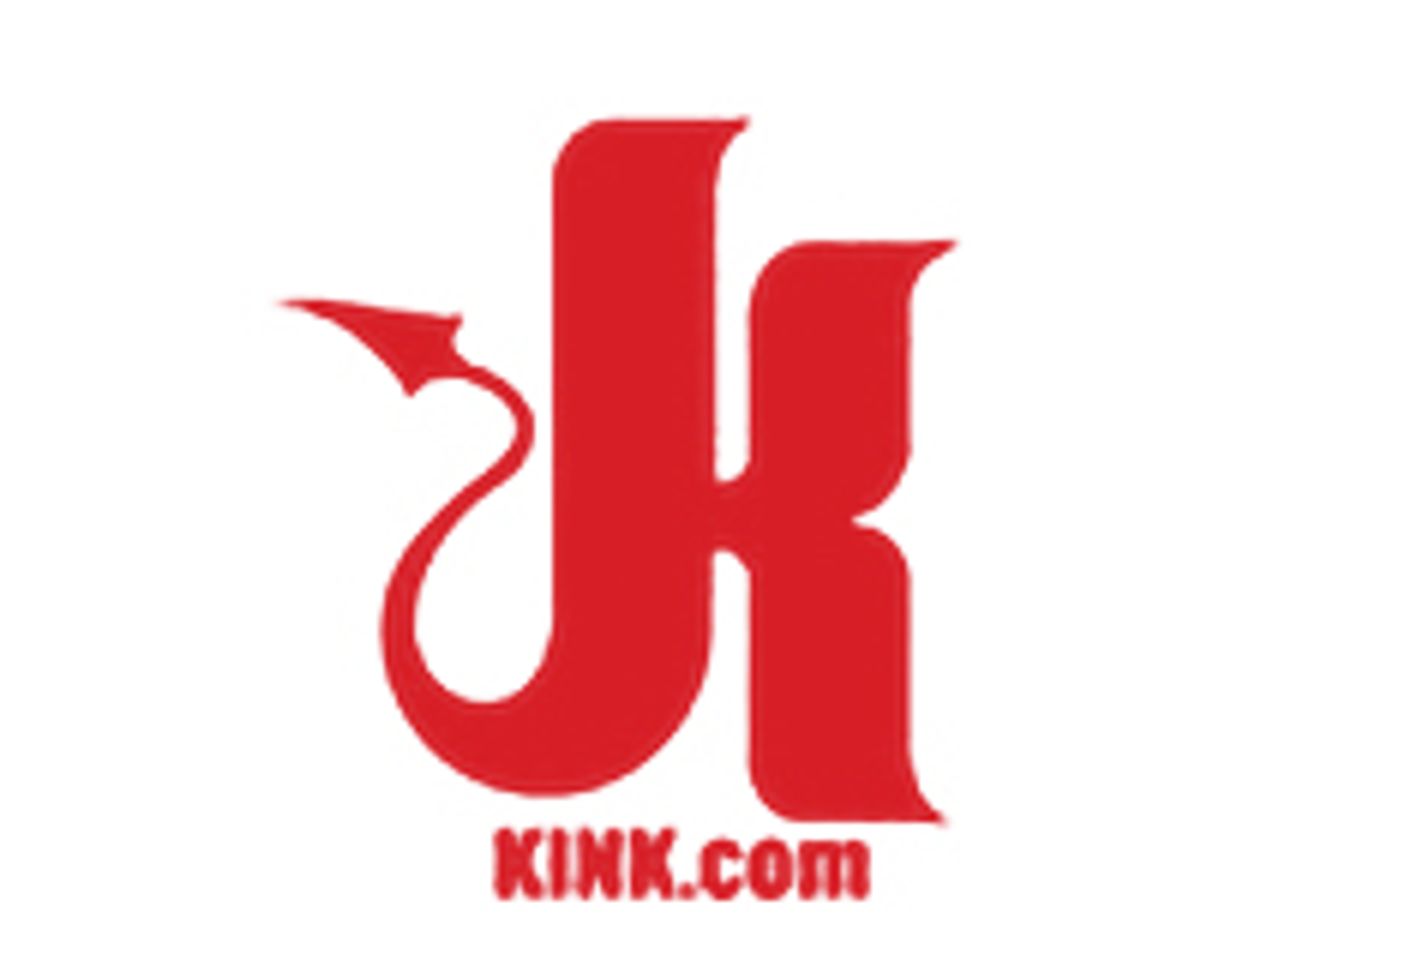 Kink.com Begins Workshop Series Exploring Sexuality